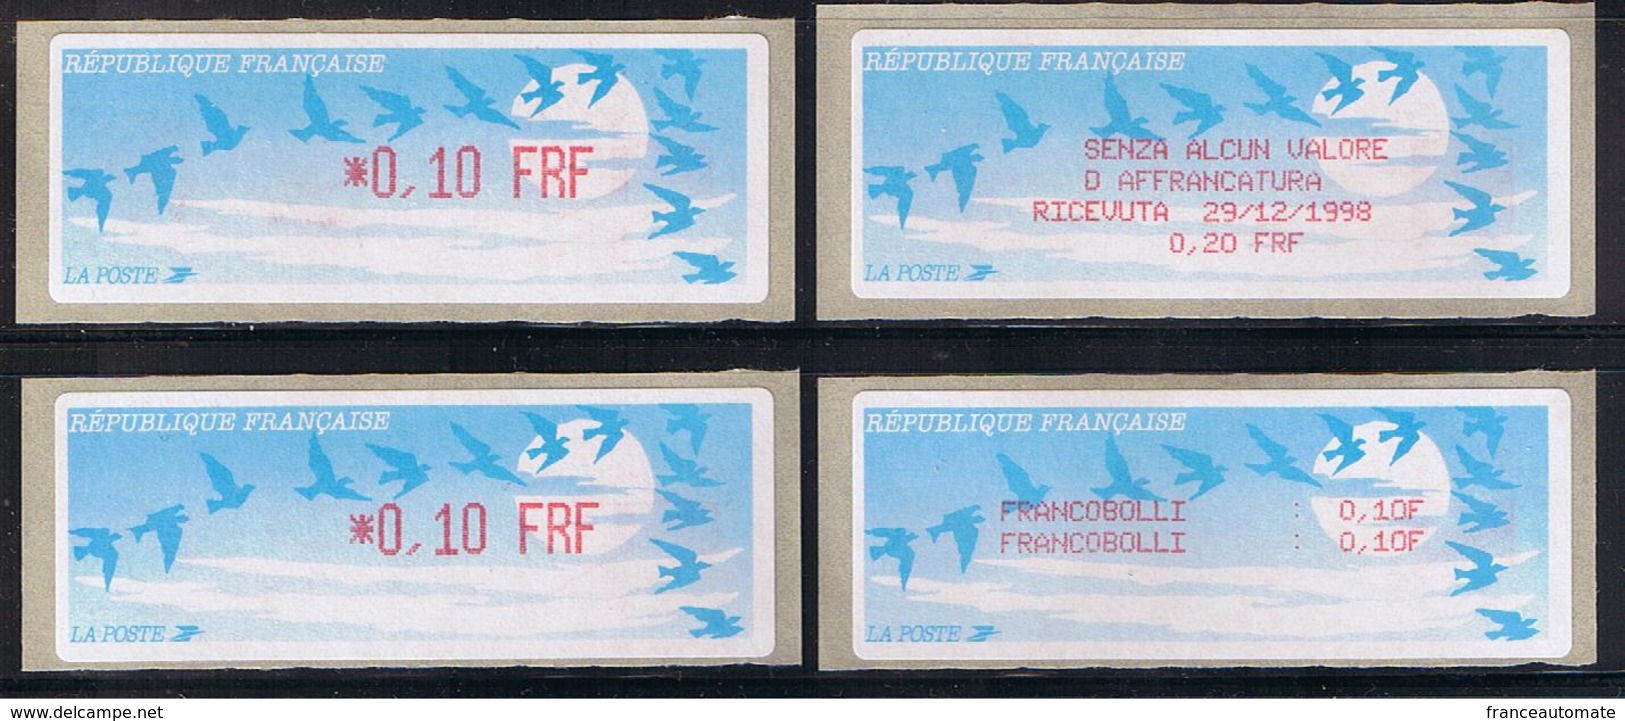 ATMS, LISA1, FRF, OISEAUX DE JUBERT, 0.10, Avec Reçu FRF Et VIGNETTE En Italien. Programme De La Préparation à L'Euro. - 1990 Type « Oiseaux De Jubert »